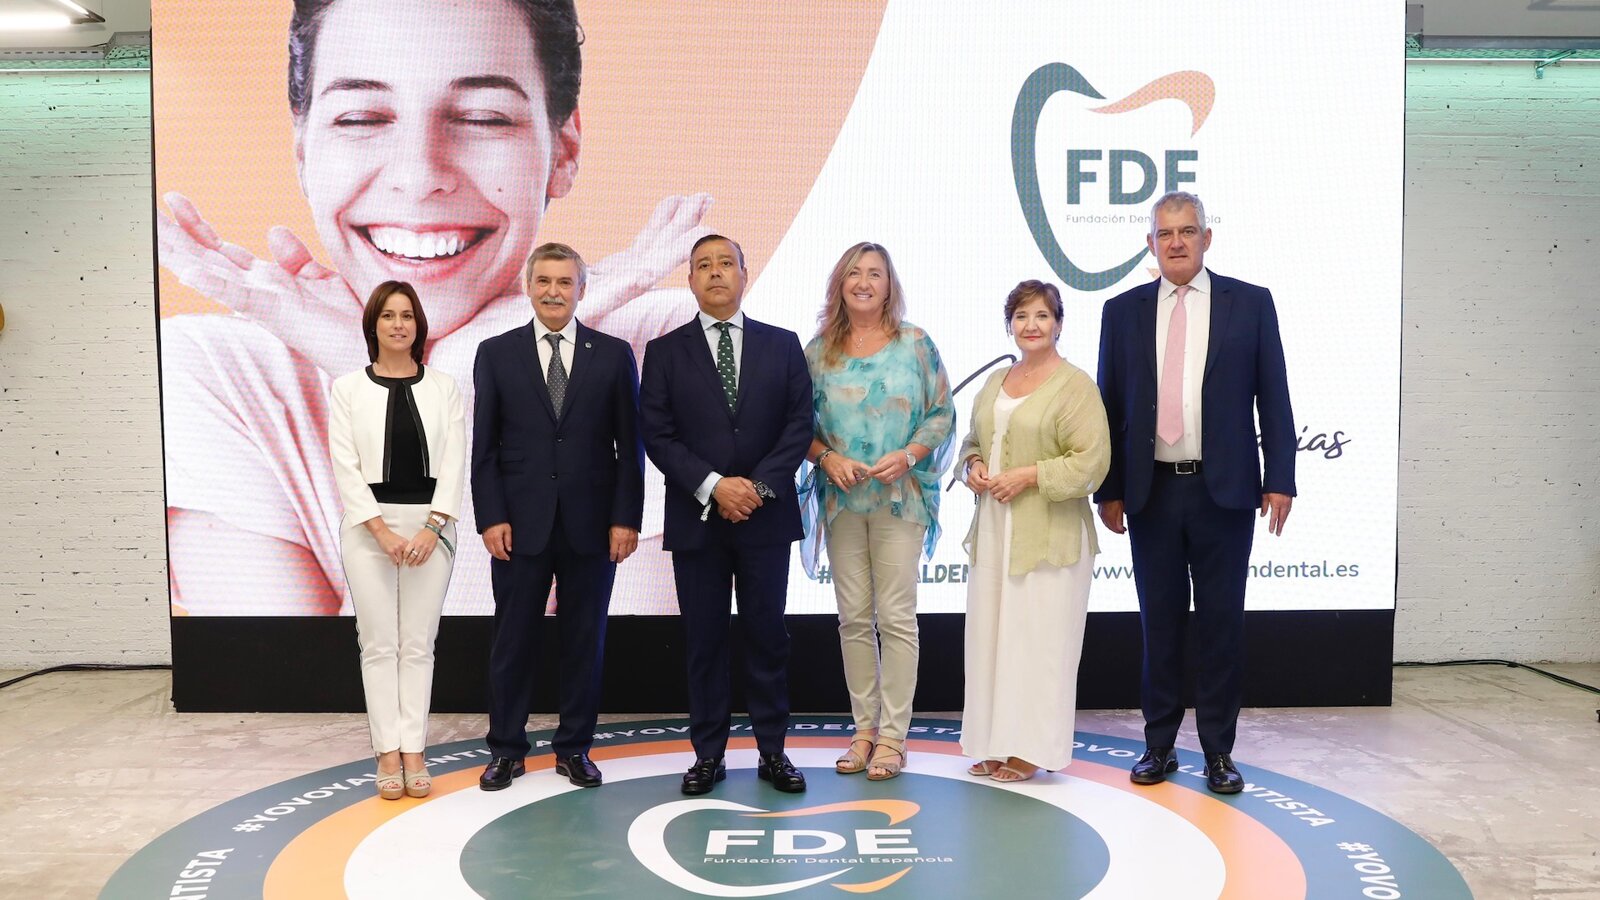 La FDE ofrecerá atención dental gratuita a 5.000 pacientes 